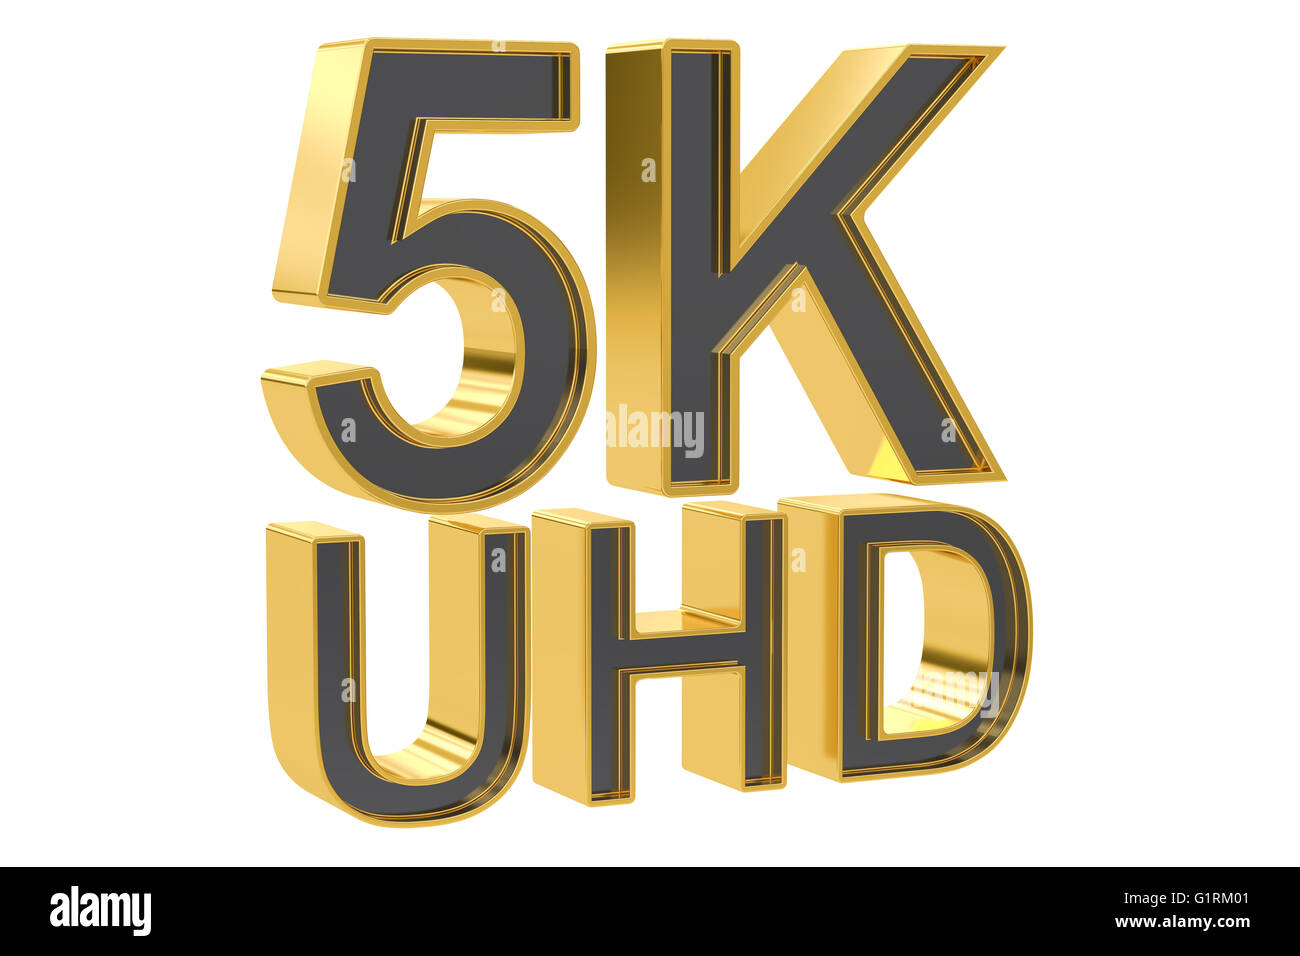 5K UHD, rendu 3D concept isolé sur fond blanc Banque D'Images